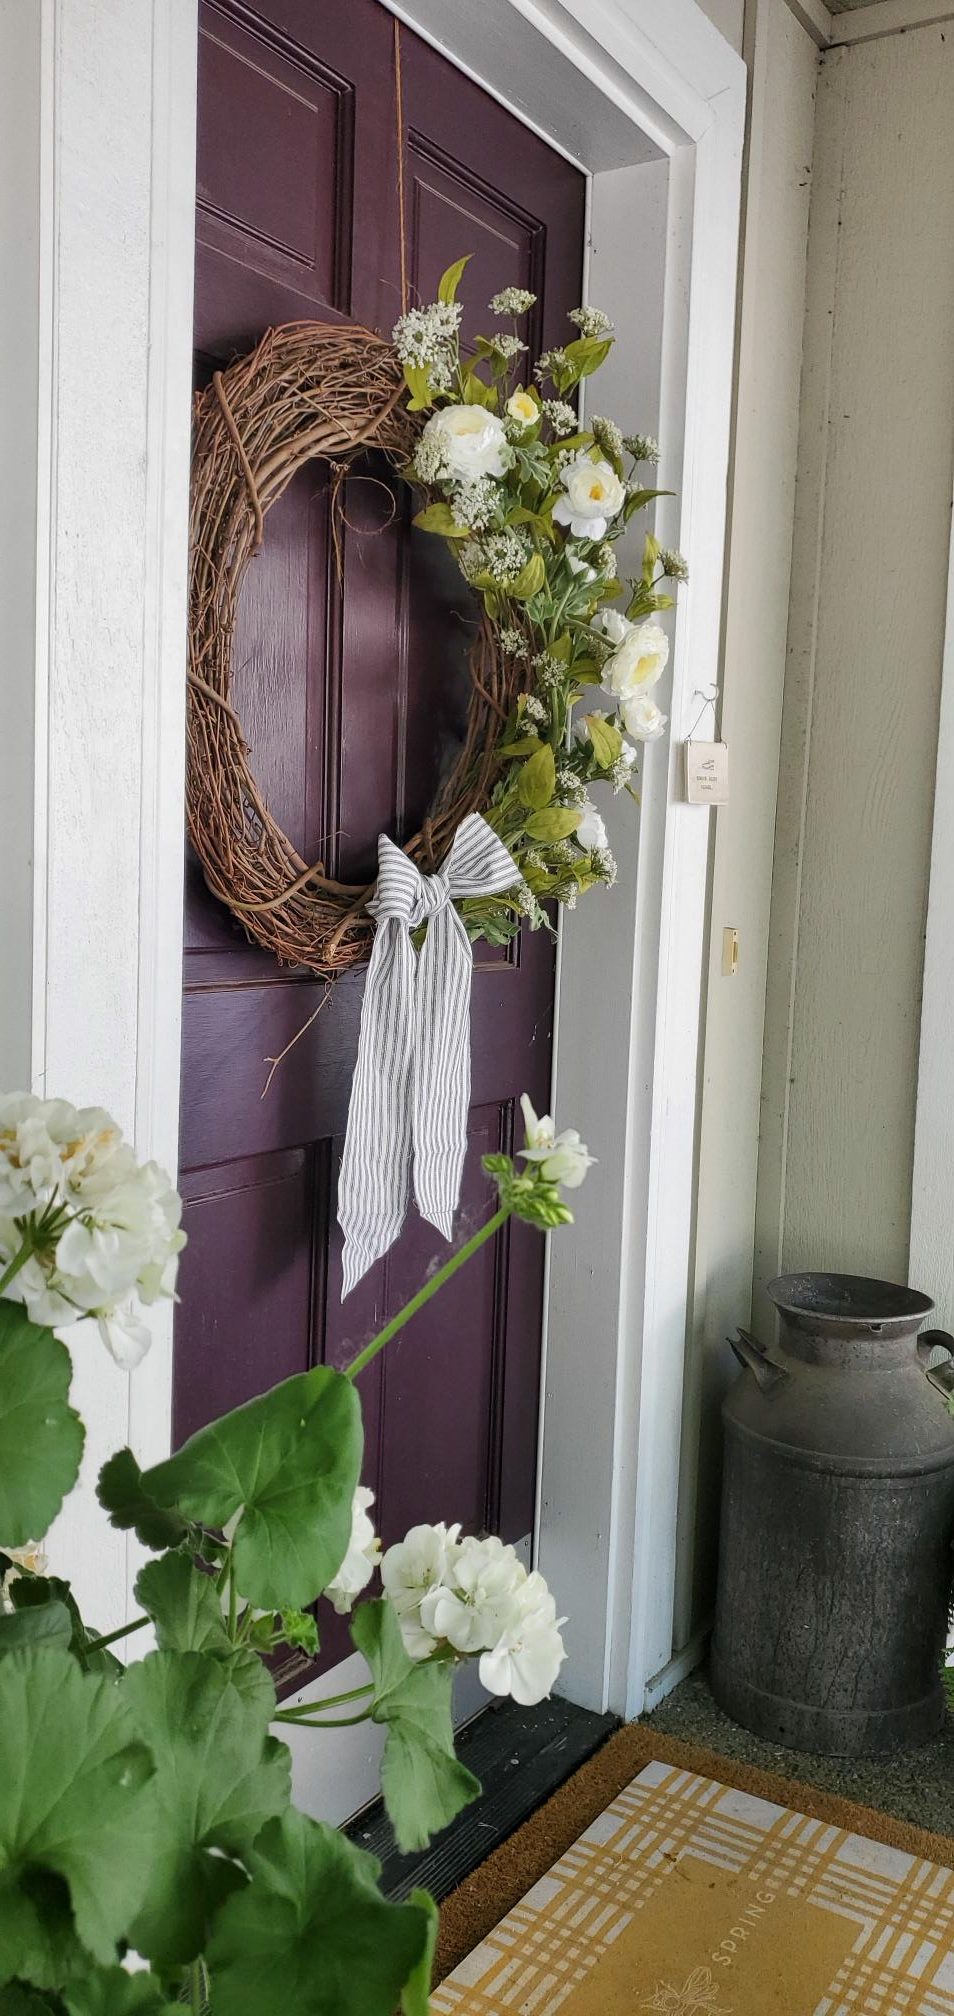 No wire Summer wreath hung on front door.